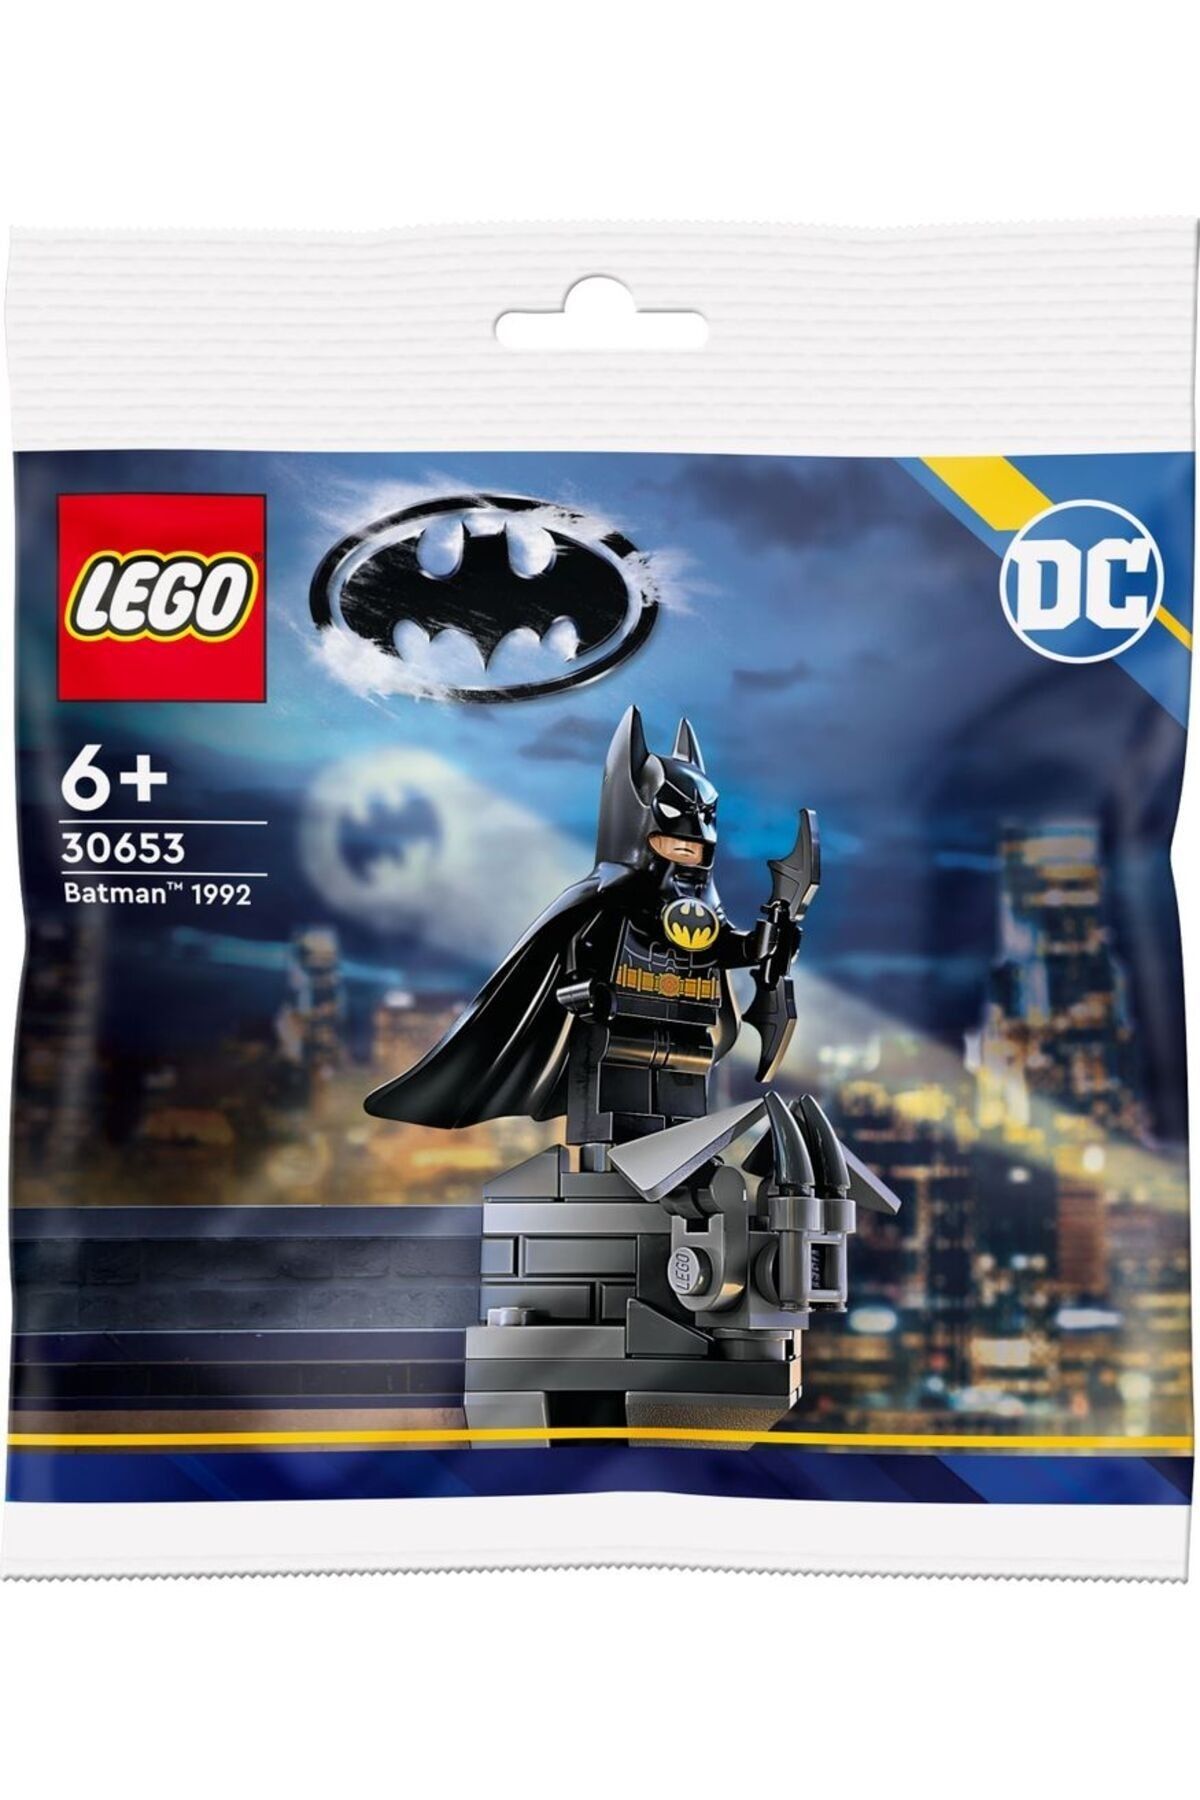 LEGO 30653 DC Comics Super Heroes Batman 1992 Polybag